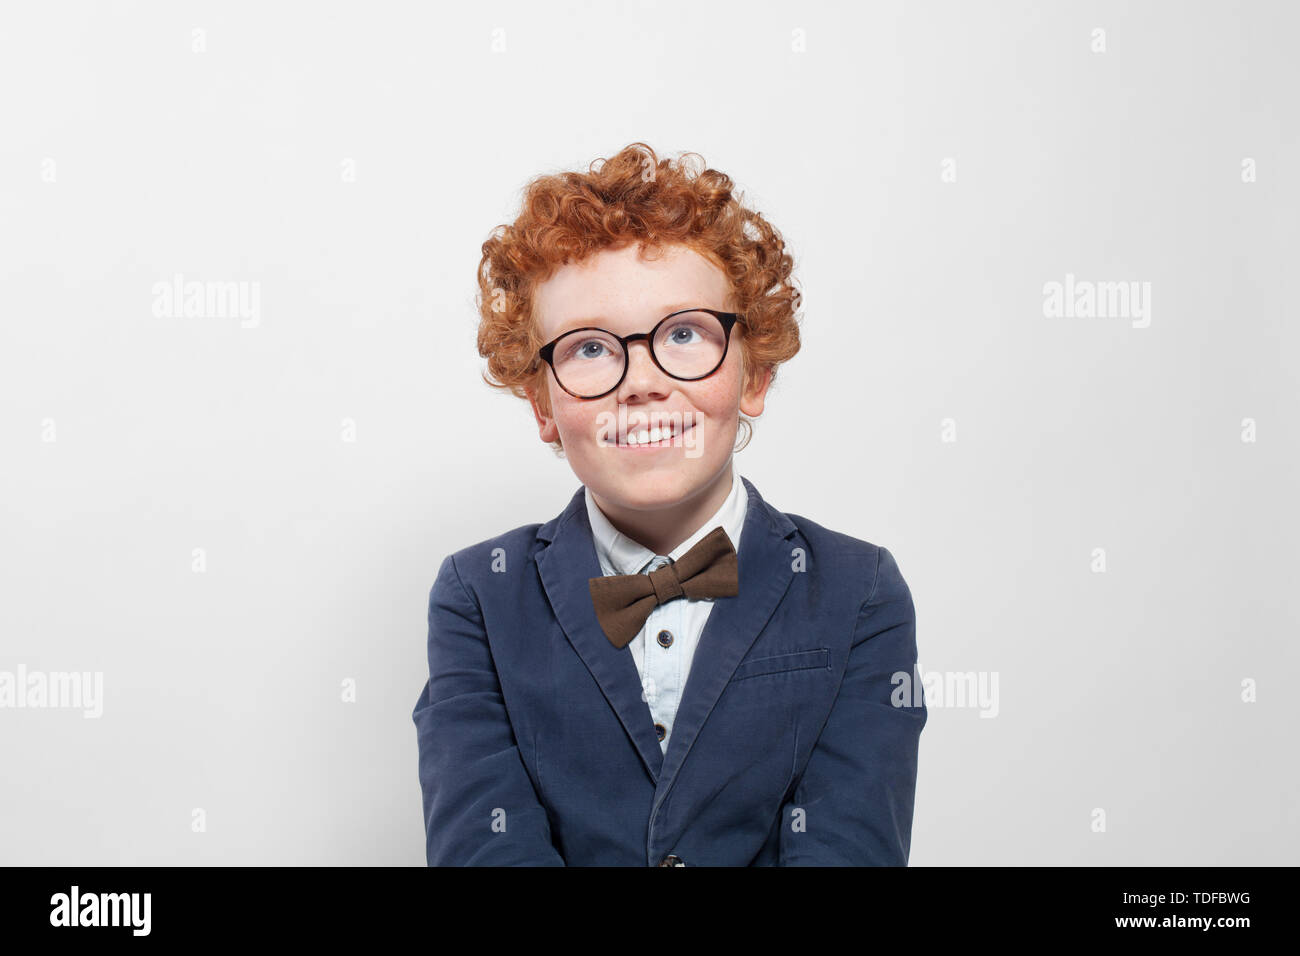 Carino redhead boy in bicchieri cercando su sfondo bianco Foto Stock